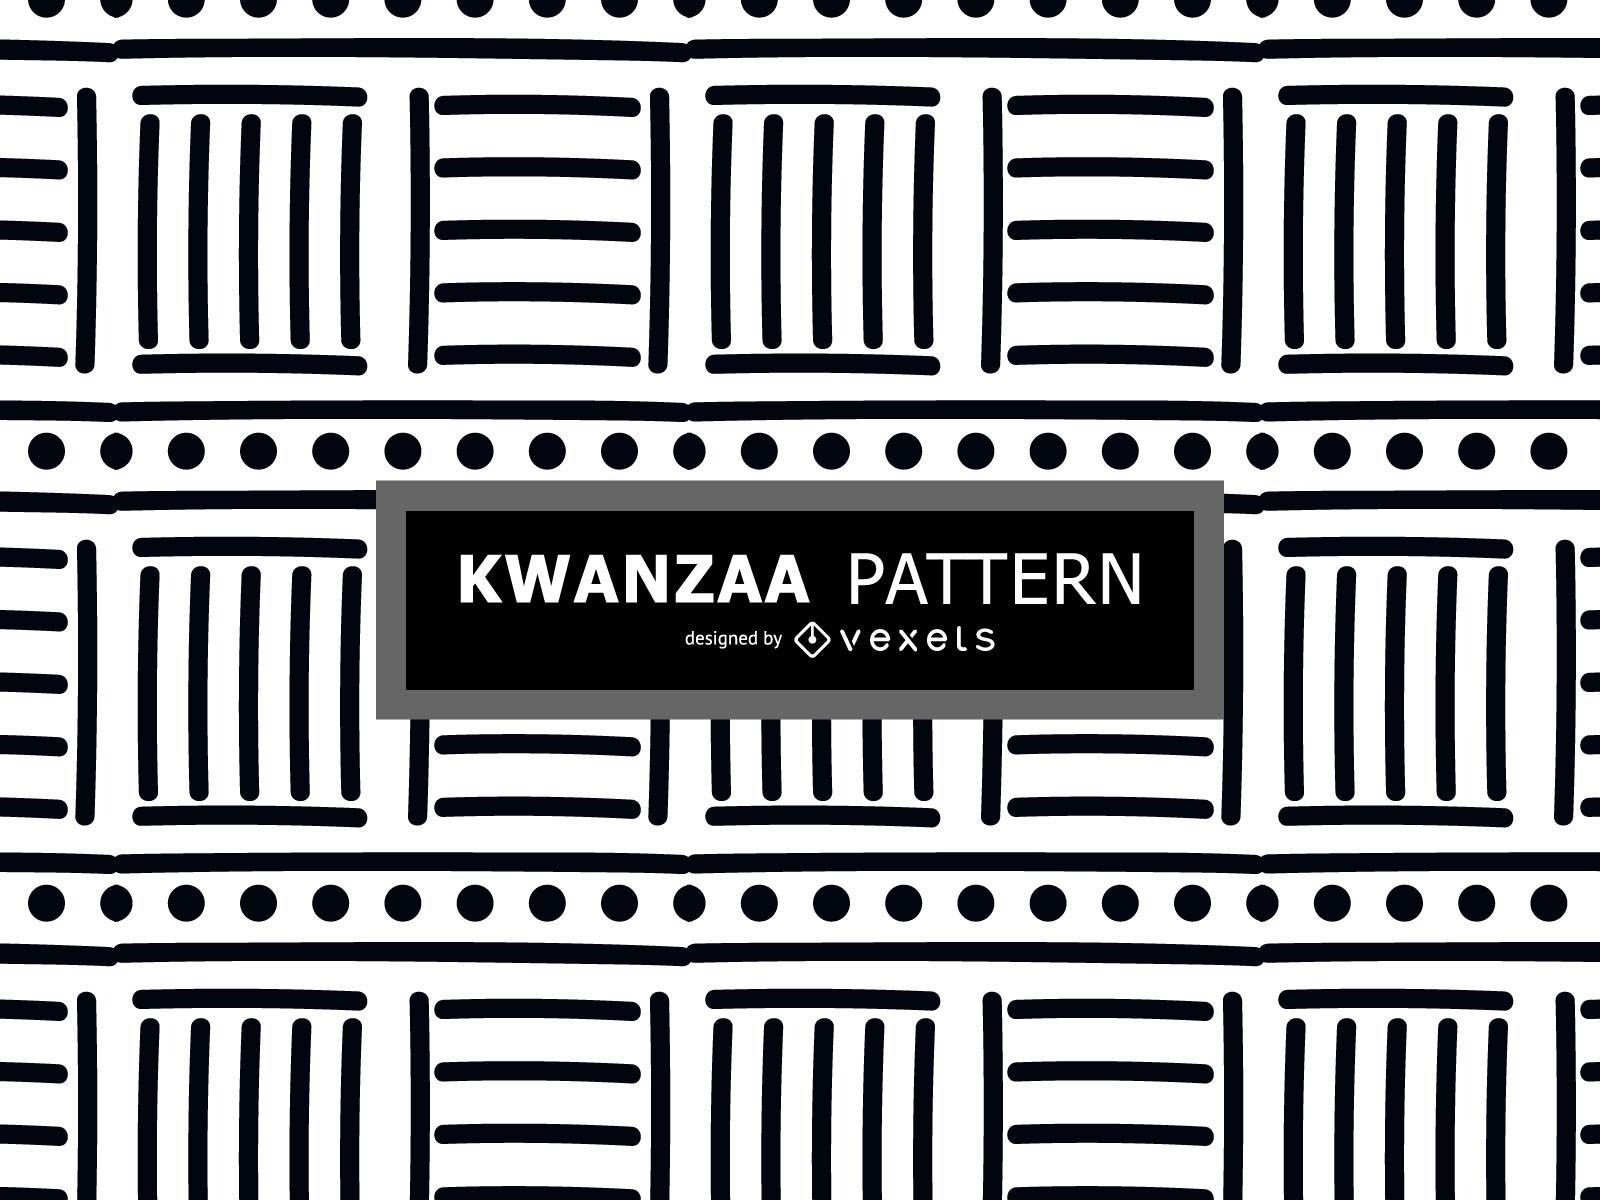 Black and white Kwanzaa pattern